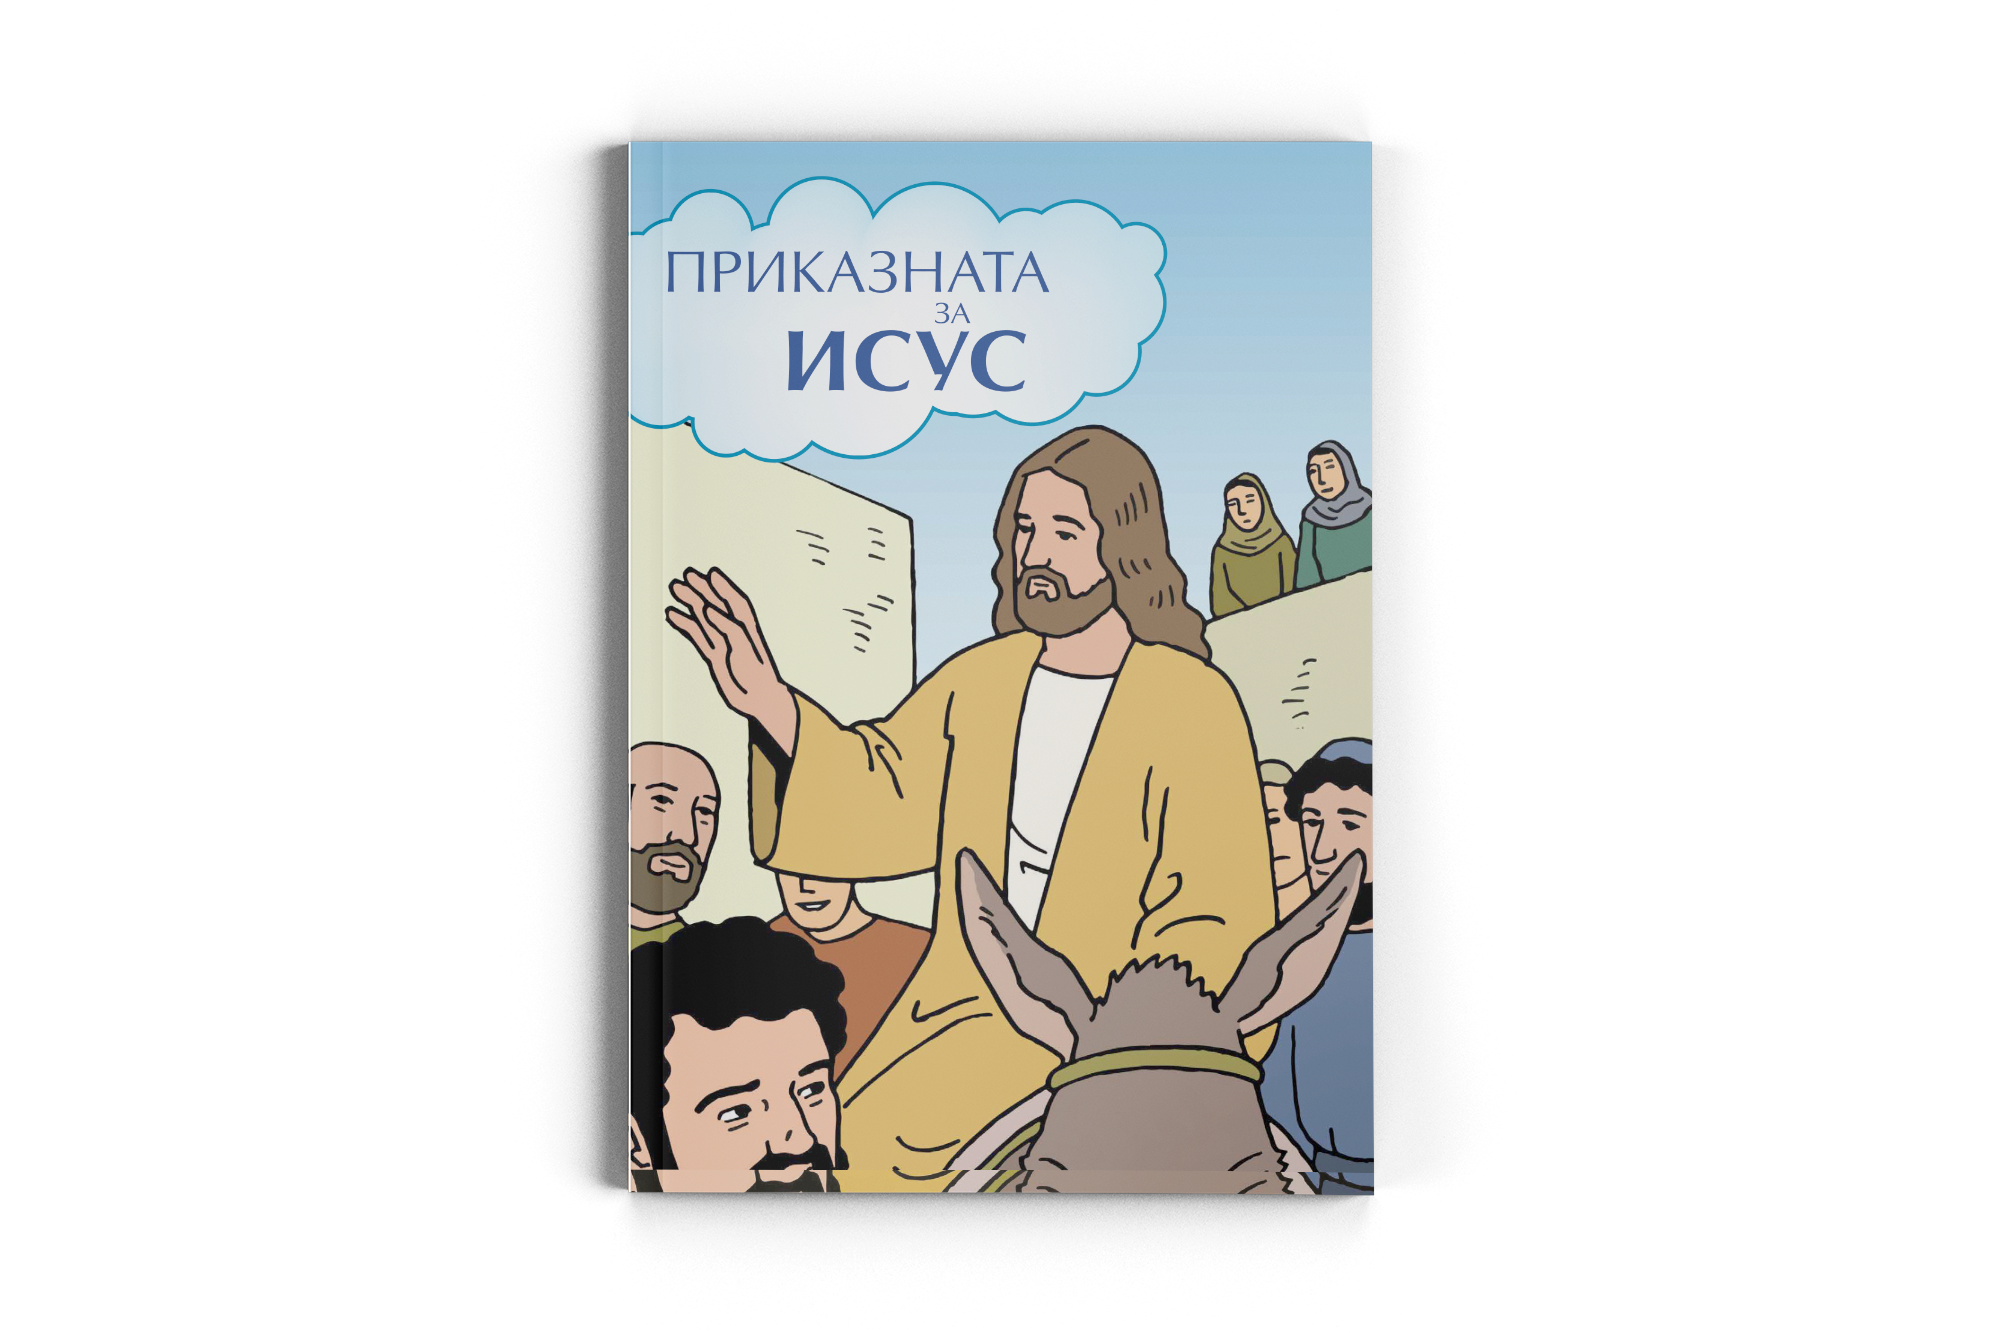 The Jesus Storybook / Mazedonisch